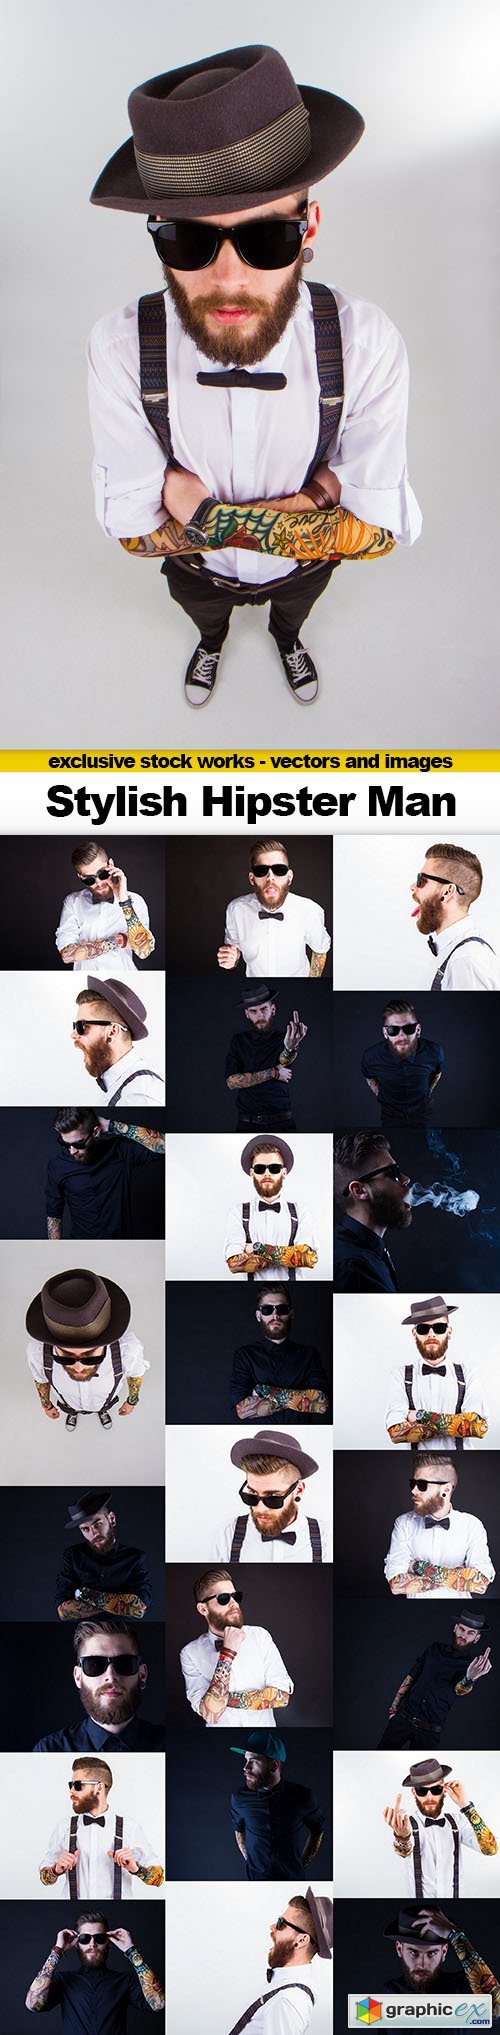 Stylish Hipster Man - 25x UHQ JPEG